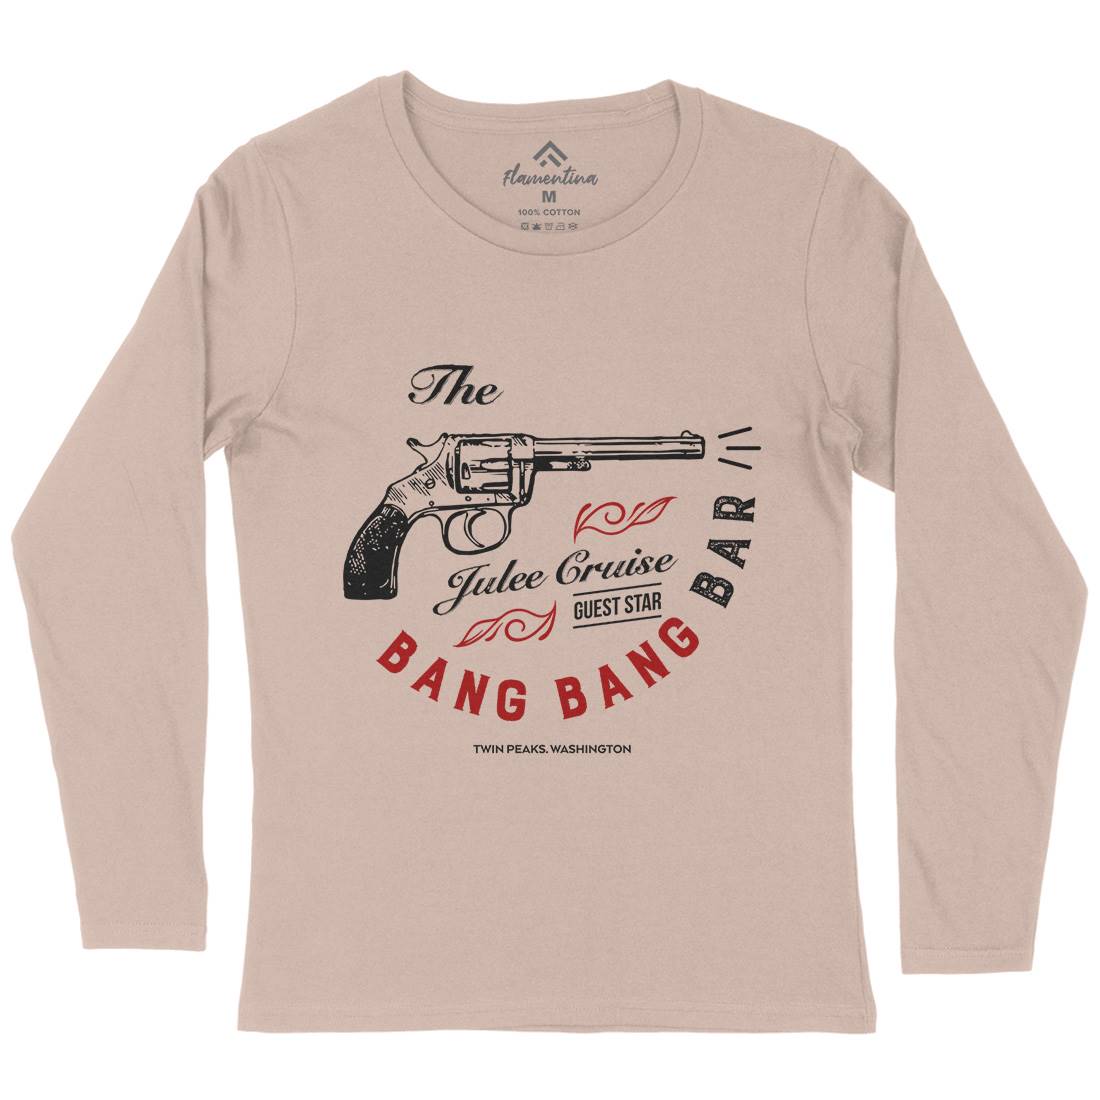 Bang Bang Bar Womens Long Sleeve T-Shirt Drinks D224